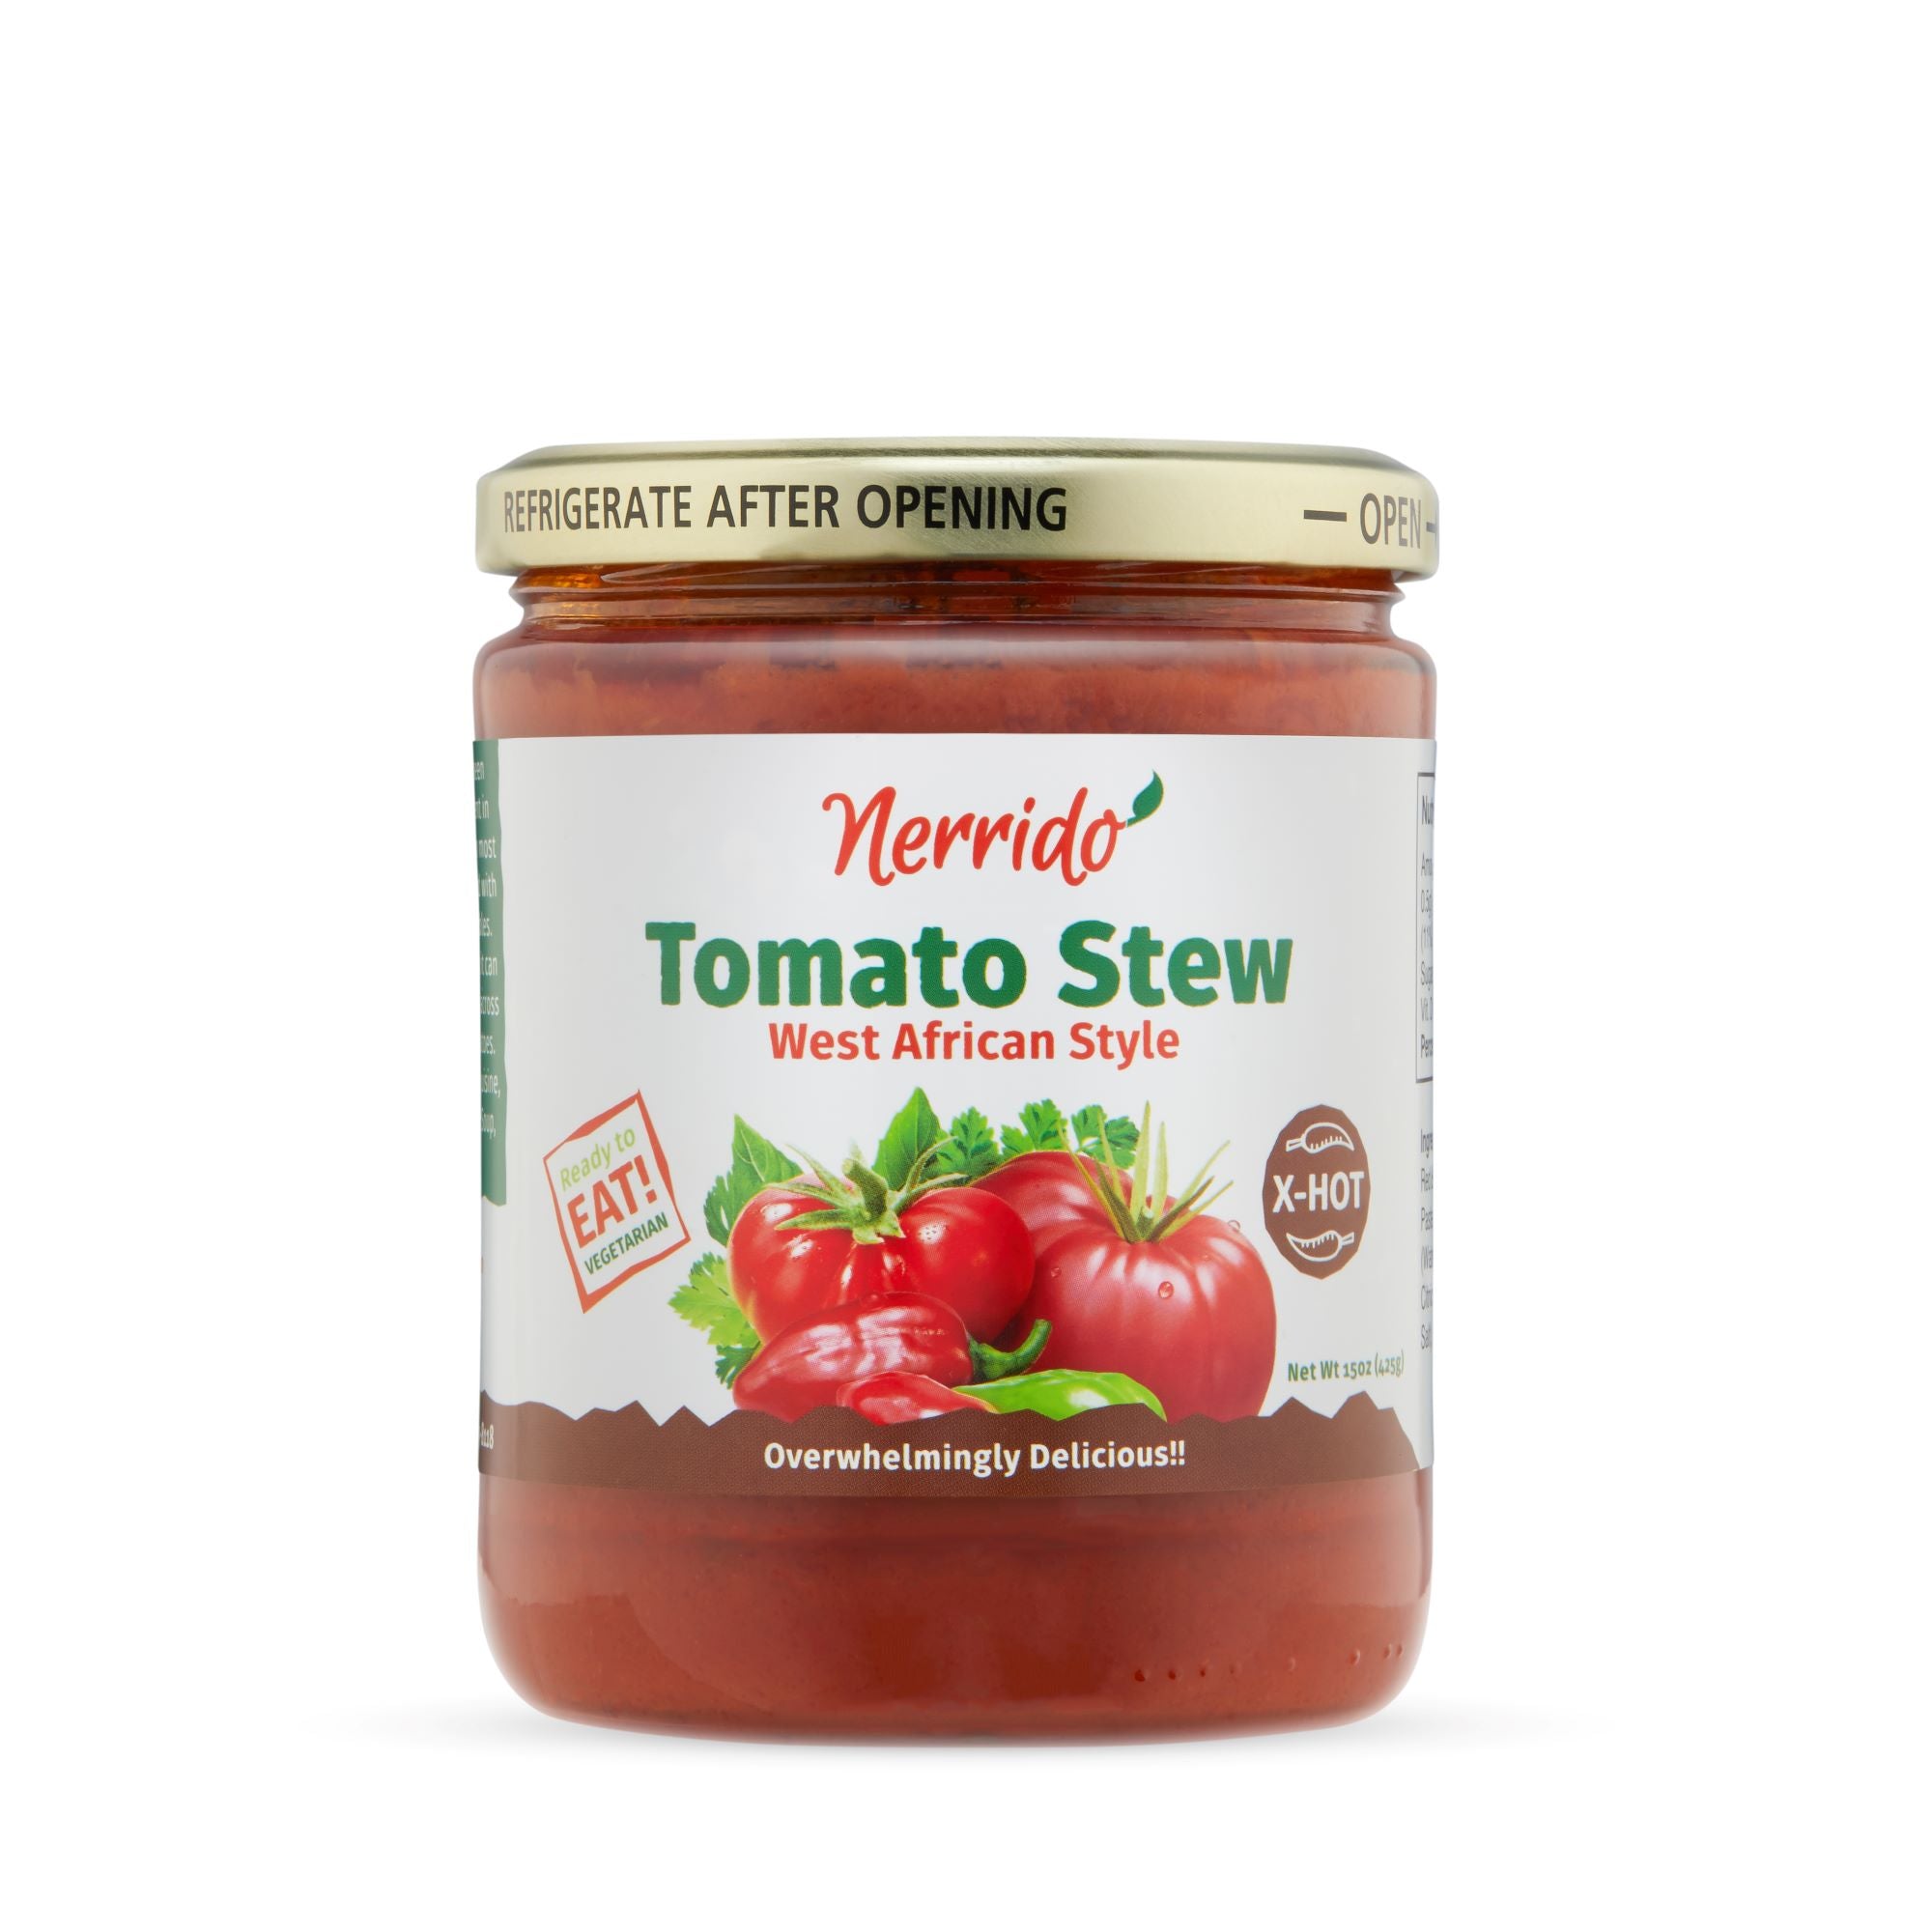 Nerrido Tomato Stew